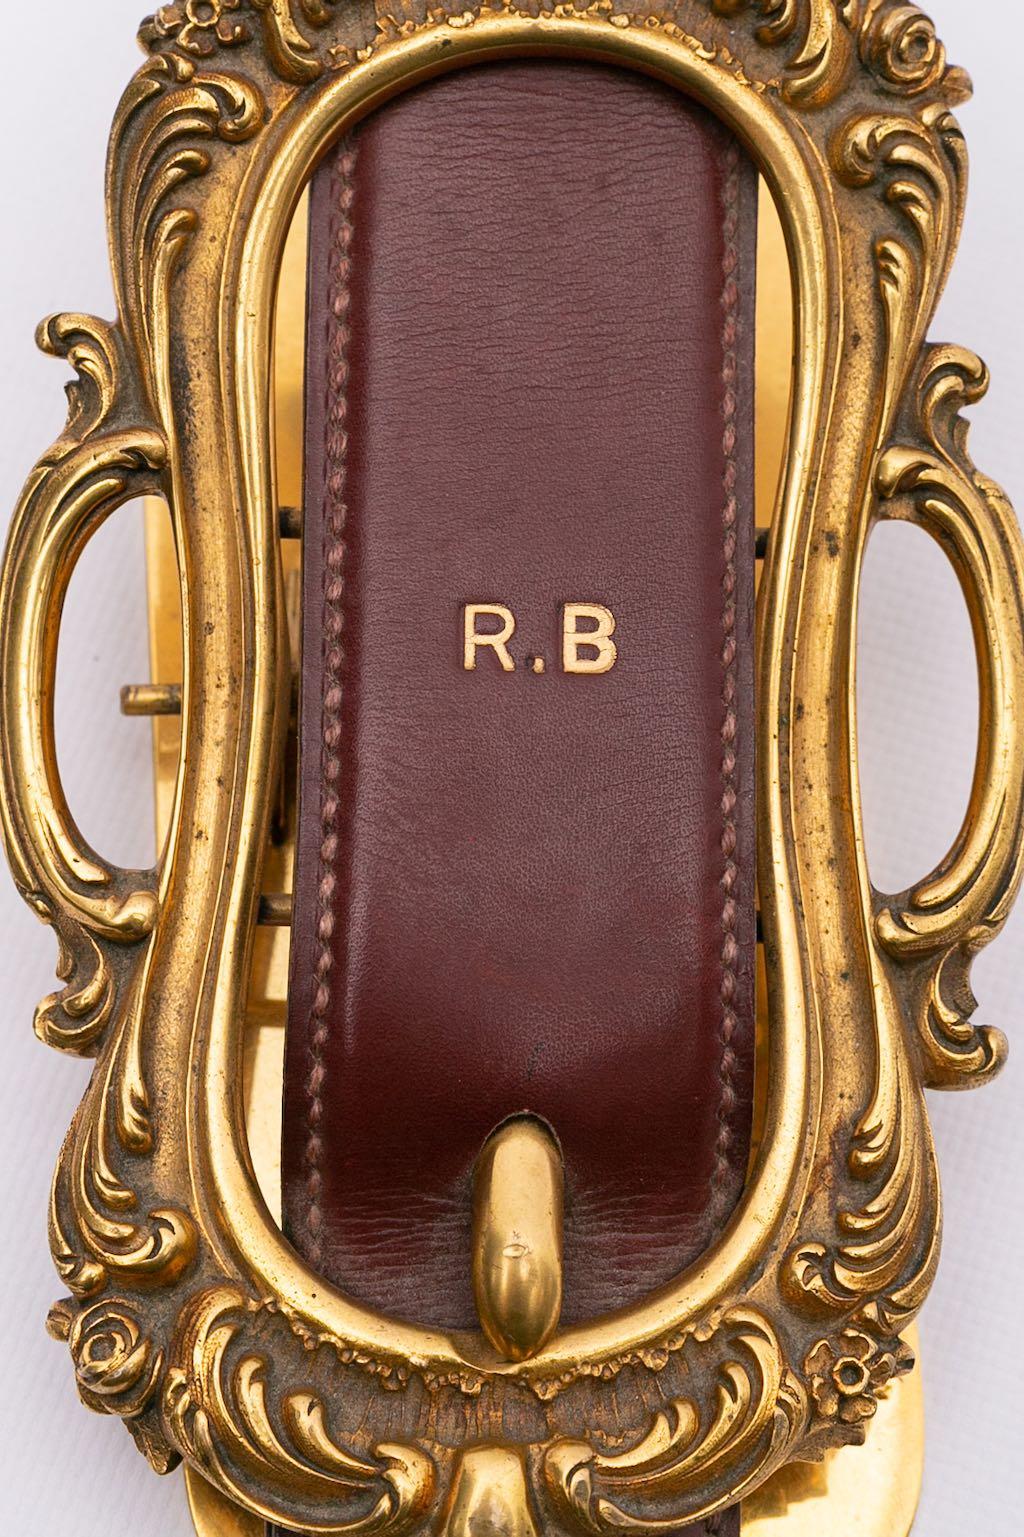 Hermes -Papiergewicht aus Leder und Goldplatte, die eine Gürtelschnalle darstellt - persönlicher Gegenstand mit Datum und Initialen R.B.

Zusätzliche Informationen: 
Abmessungen: Länge: 21,5 cm (8,46